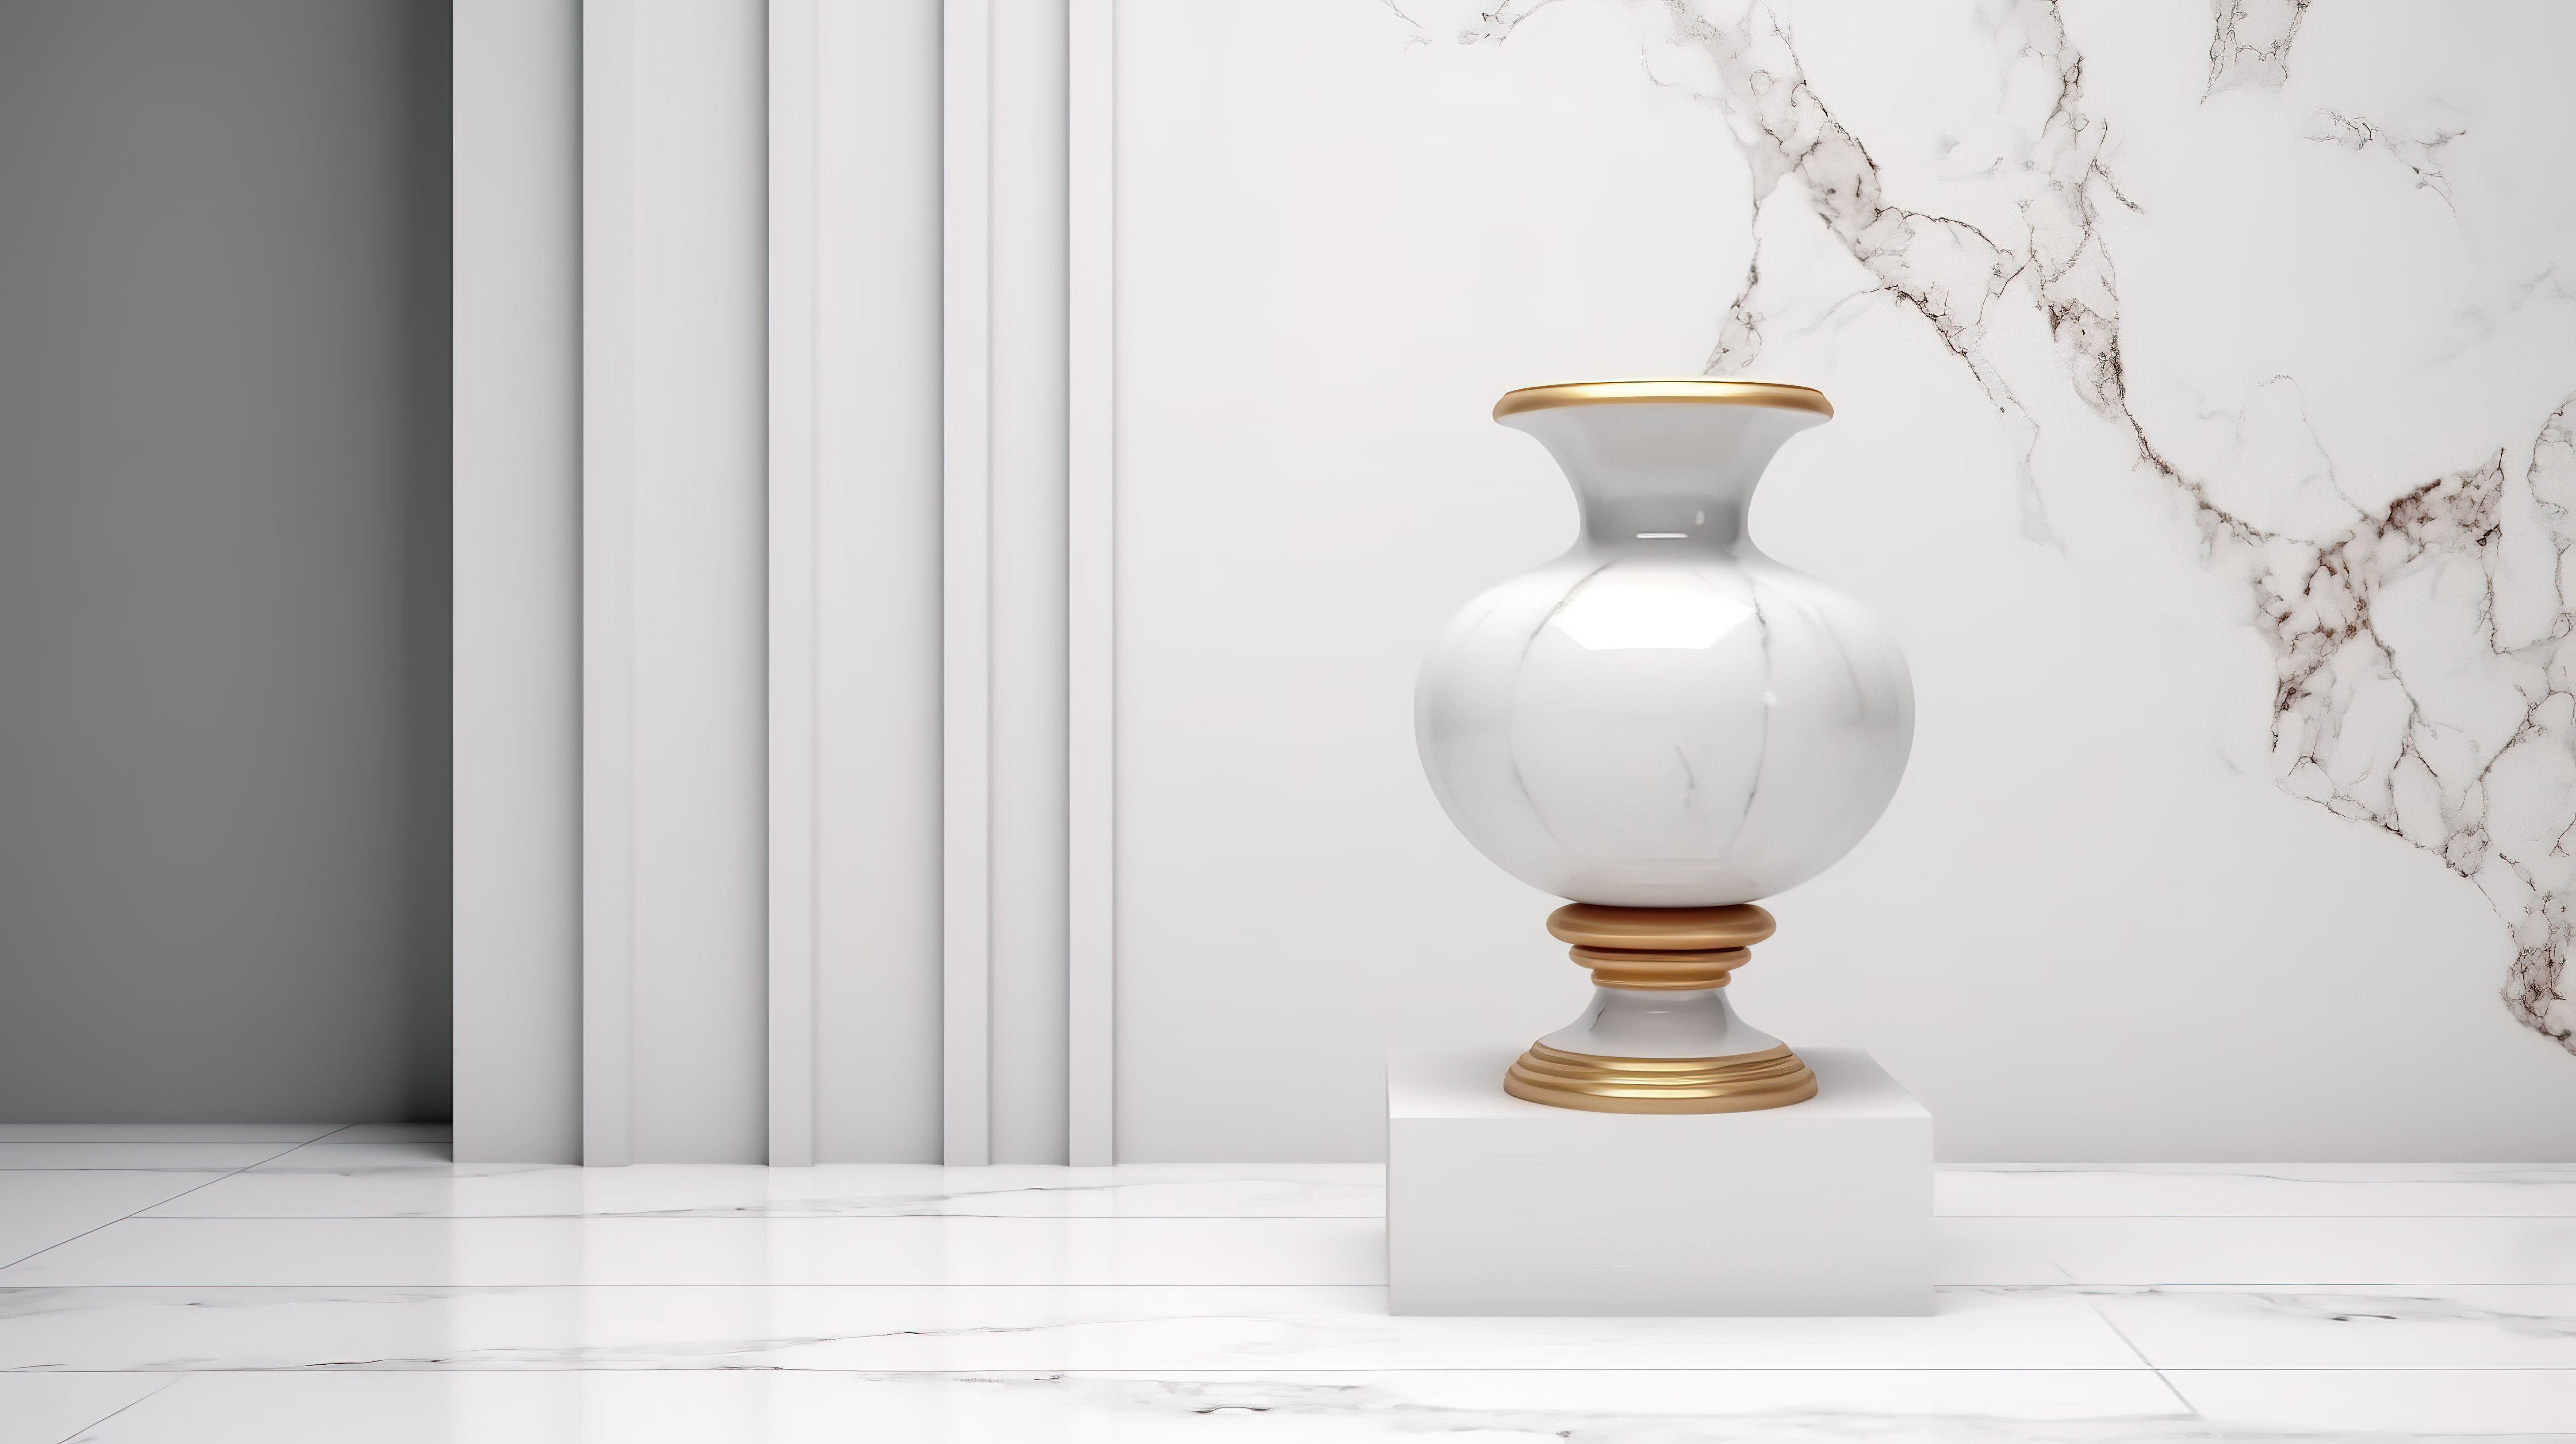 博物馆展台上展示的陶瓷花瓶的 3D 渲染插图图片